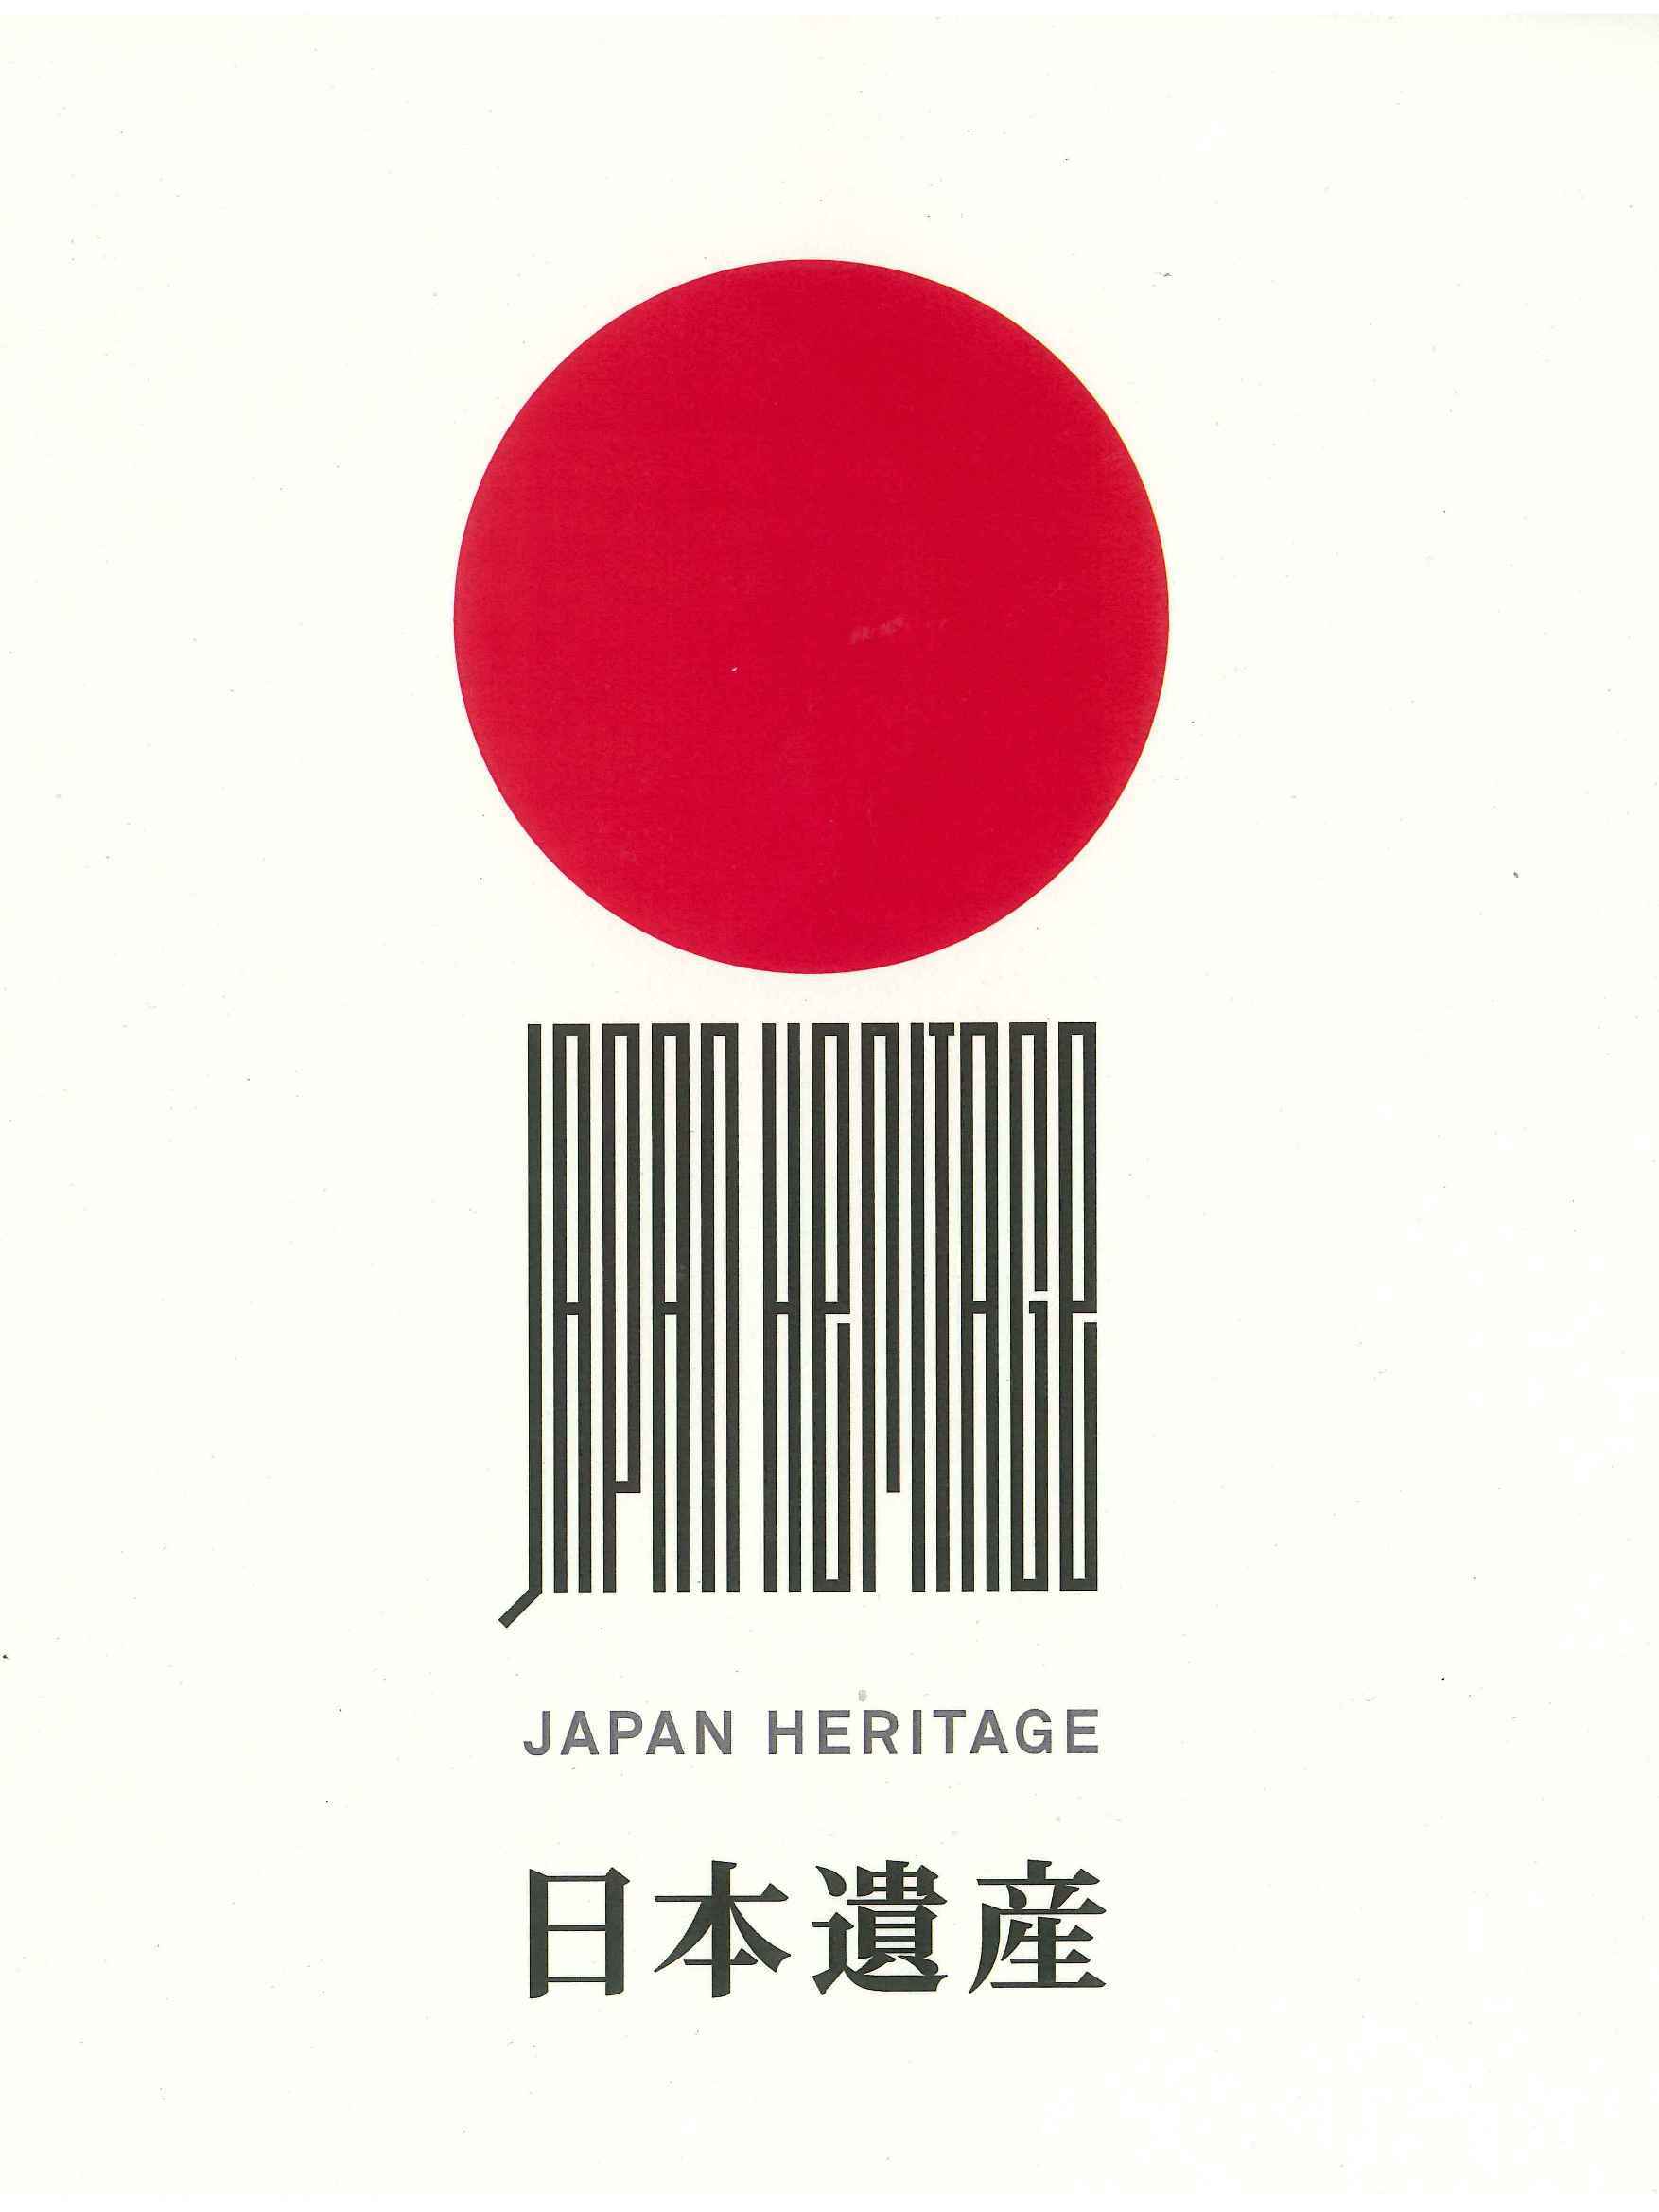 日本遺産のロゴ